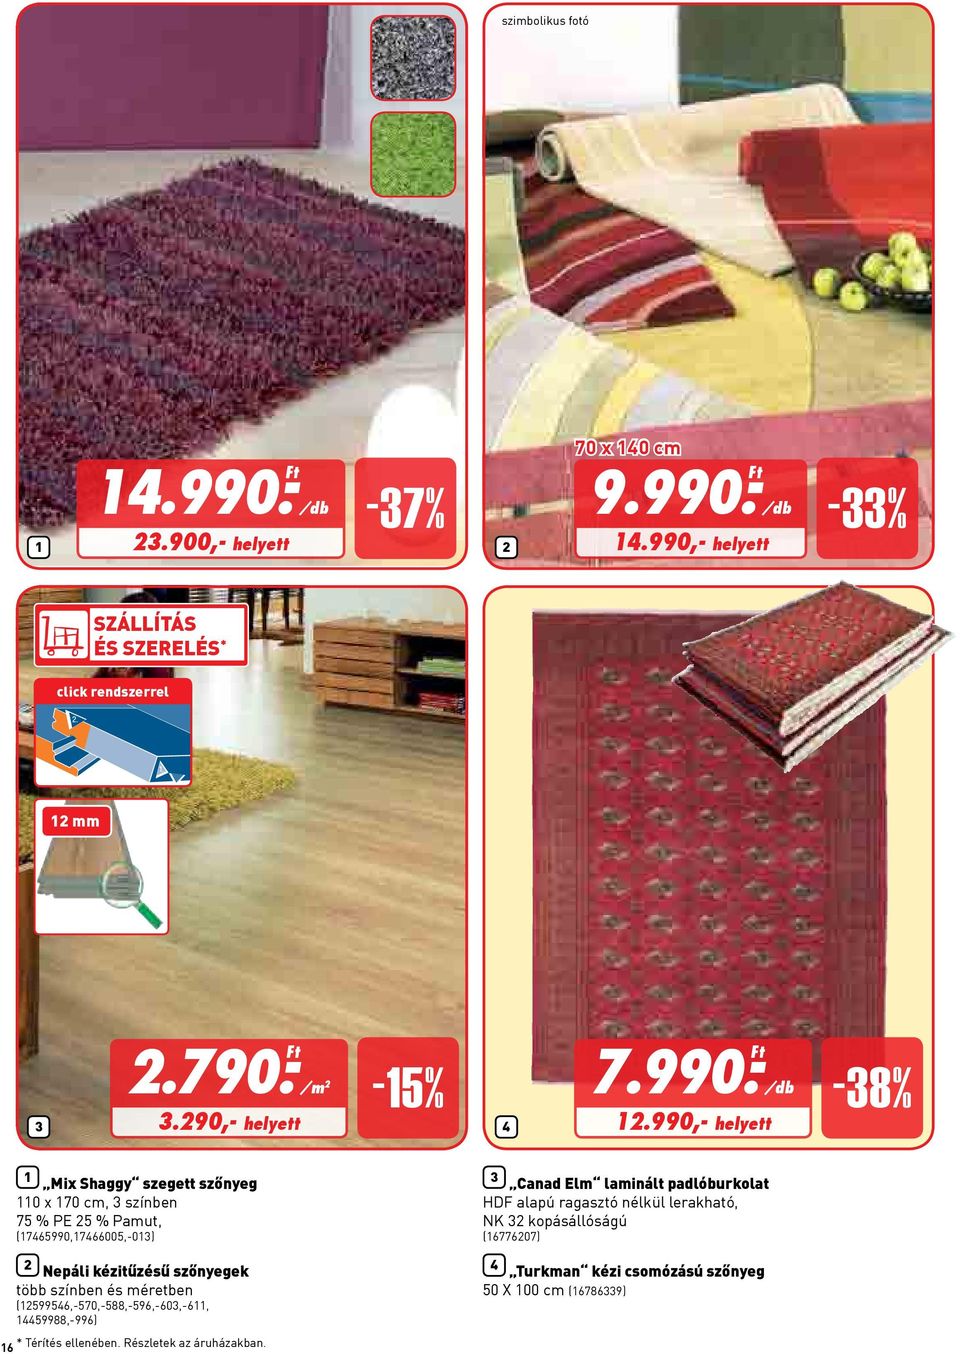 990,- helyett -8% 1 Mix Shaggy szegett szőnyeg 110 x 170 cm, színben 75 % PE 5 % Pamut, (17465990,17466005,-01) Nepáli kézitűzésű szőnyegek több